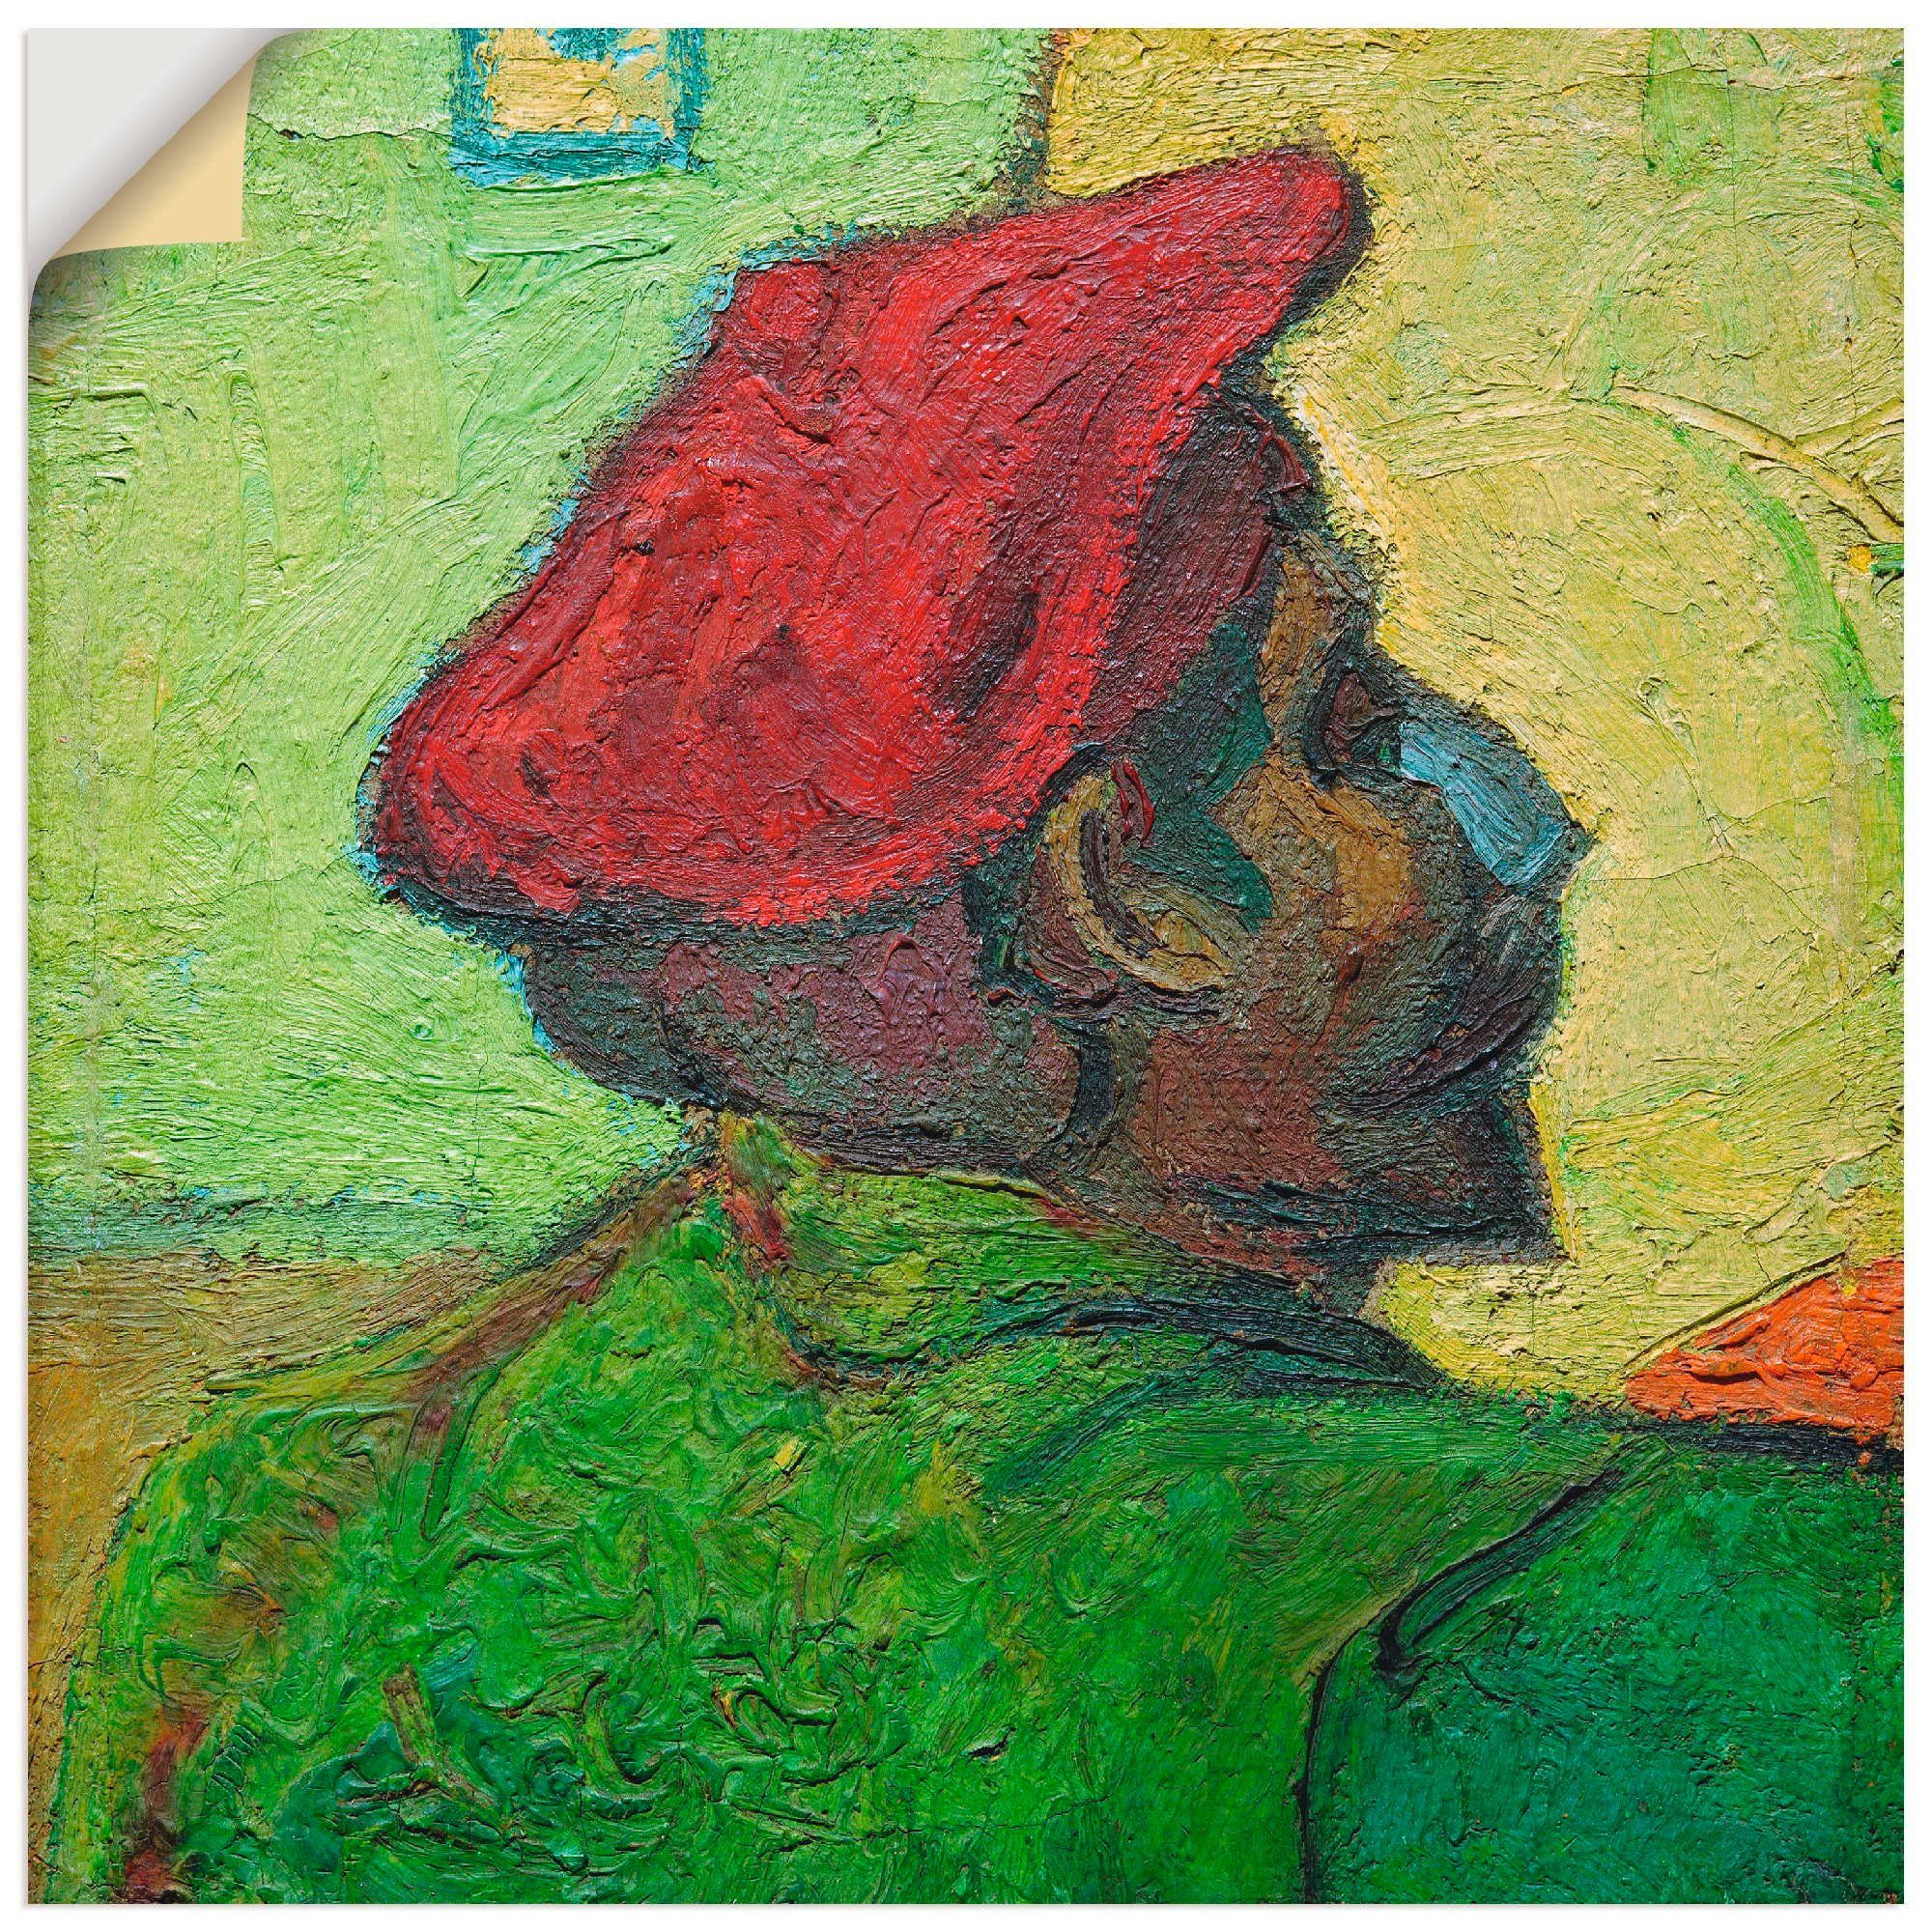 Artland Artprint Paul Gauguin schilderij v. V. van Gogh in vele afmetingen & productsoorten -artprint op linnen, poster, muursticker / wandfolie ook geschikt voor de badkamer (1 st